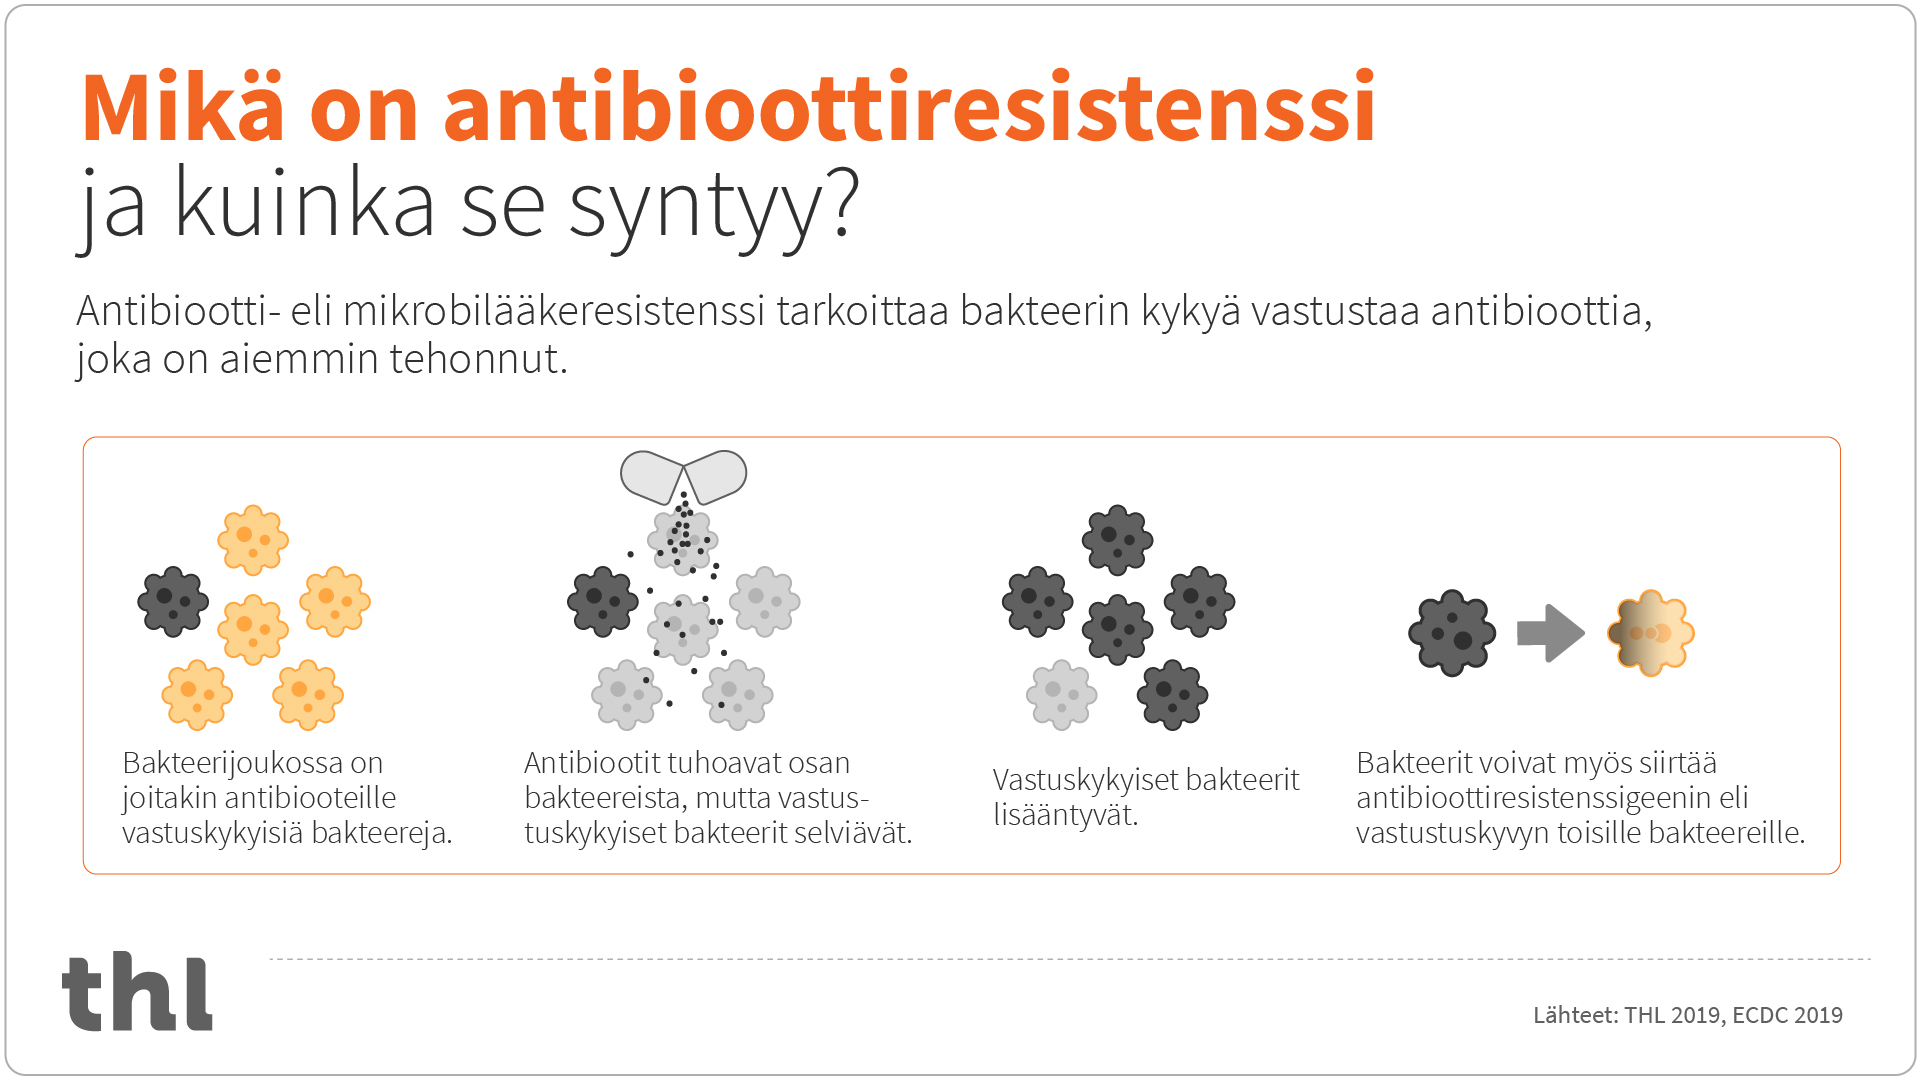 infograafi: miten antibioottiresistenssi syntyy? Antibiootti- eli mikrobilääkeresistenssi tarkoittaa bakteerin kykyä vastustaa antibioottia, joka on aiemmin tehonnut. Bakteerien joukossa on joitakin antibiooteille vastustuskykyisiä bakteereja. Antibiootit tuhoavat osan bakteereista, mutta vastustuskykyiset bakteerit selviävät ja lisääntyvät. Bakteerit voivat myös siirtää resistenssigeenin eli vastustuskyvyn toisille bakteereille. 